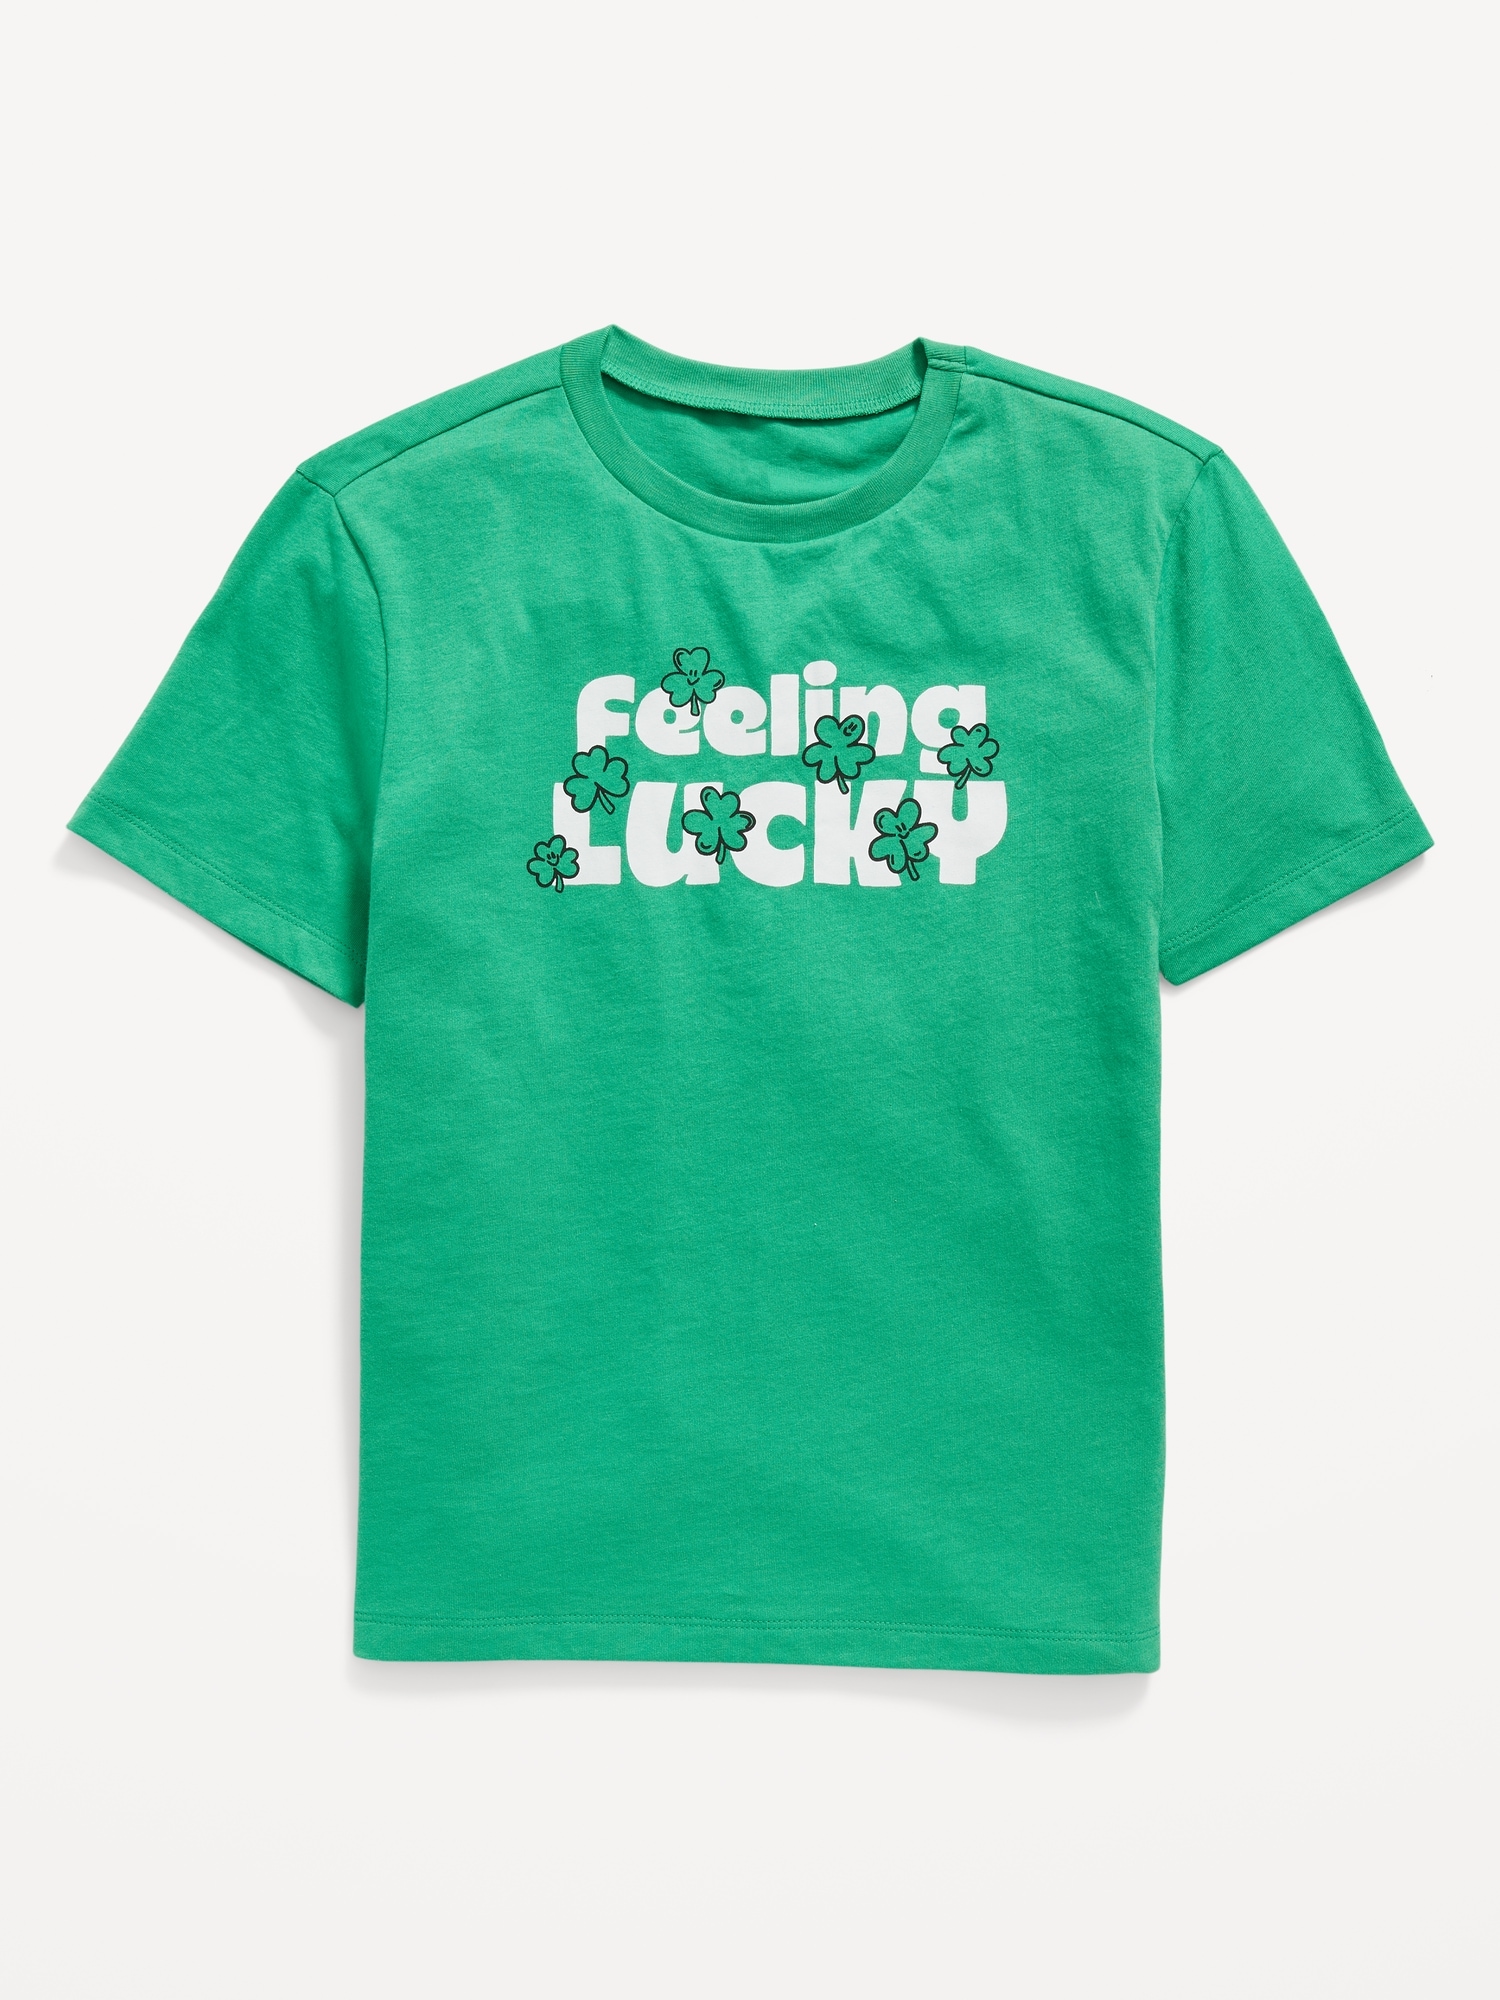 Lucky Brand Men's Lightweight Short Sleeve Graphic T-Shirt